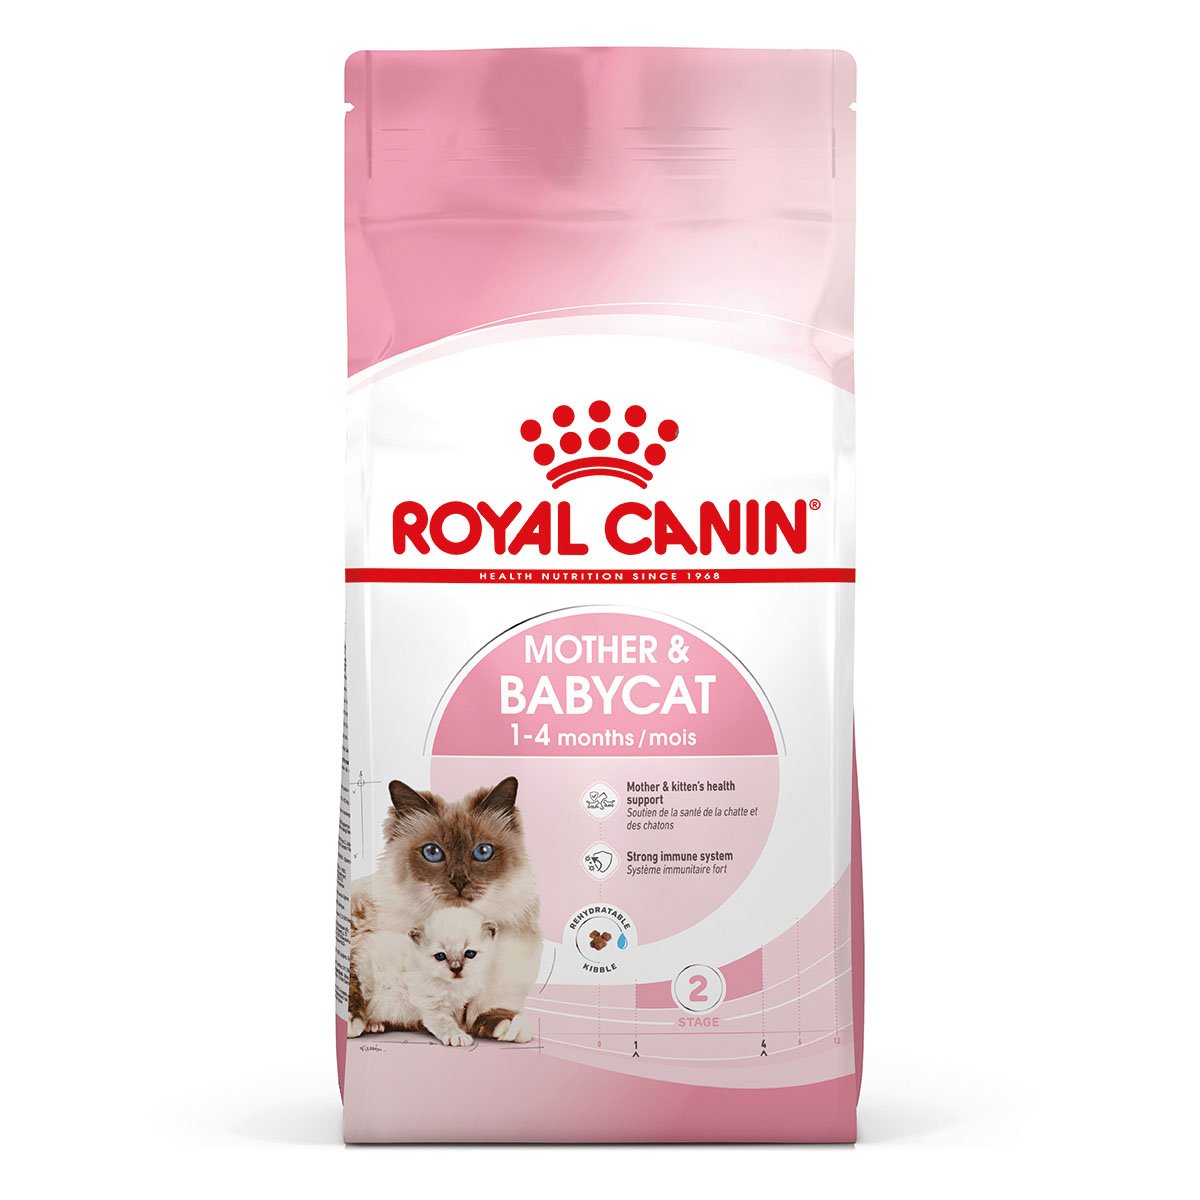 ROYAL CANIN MOTHER & BABYCAT Katzenfutter für tragende Katzen und Kitten 4kg von Royal Canin